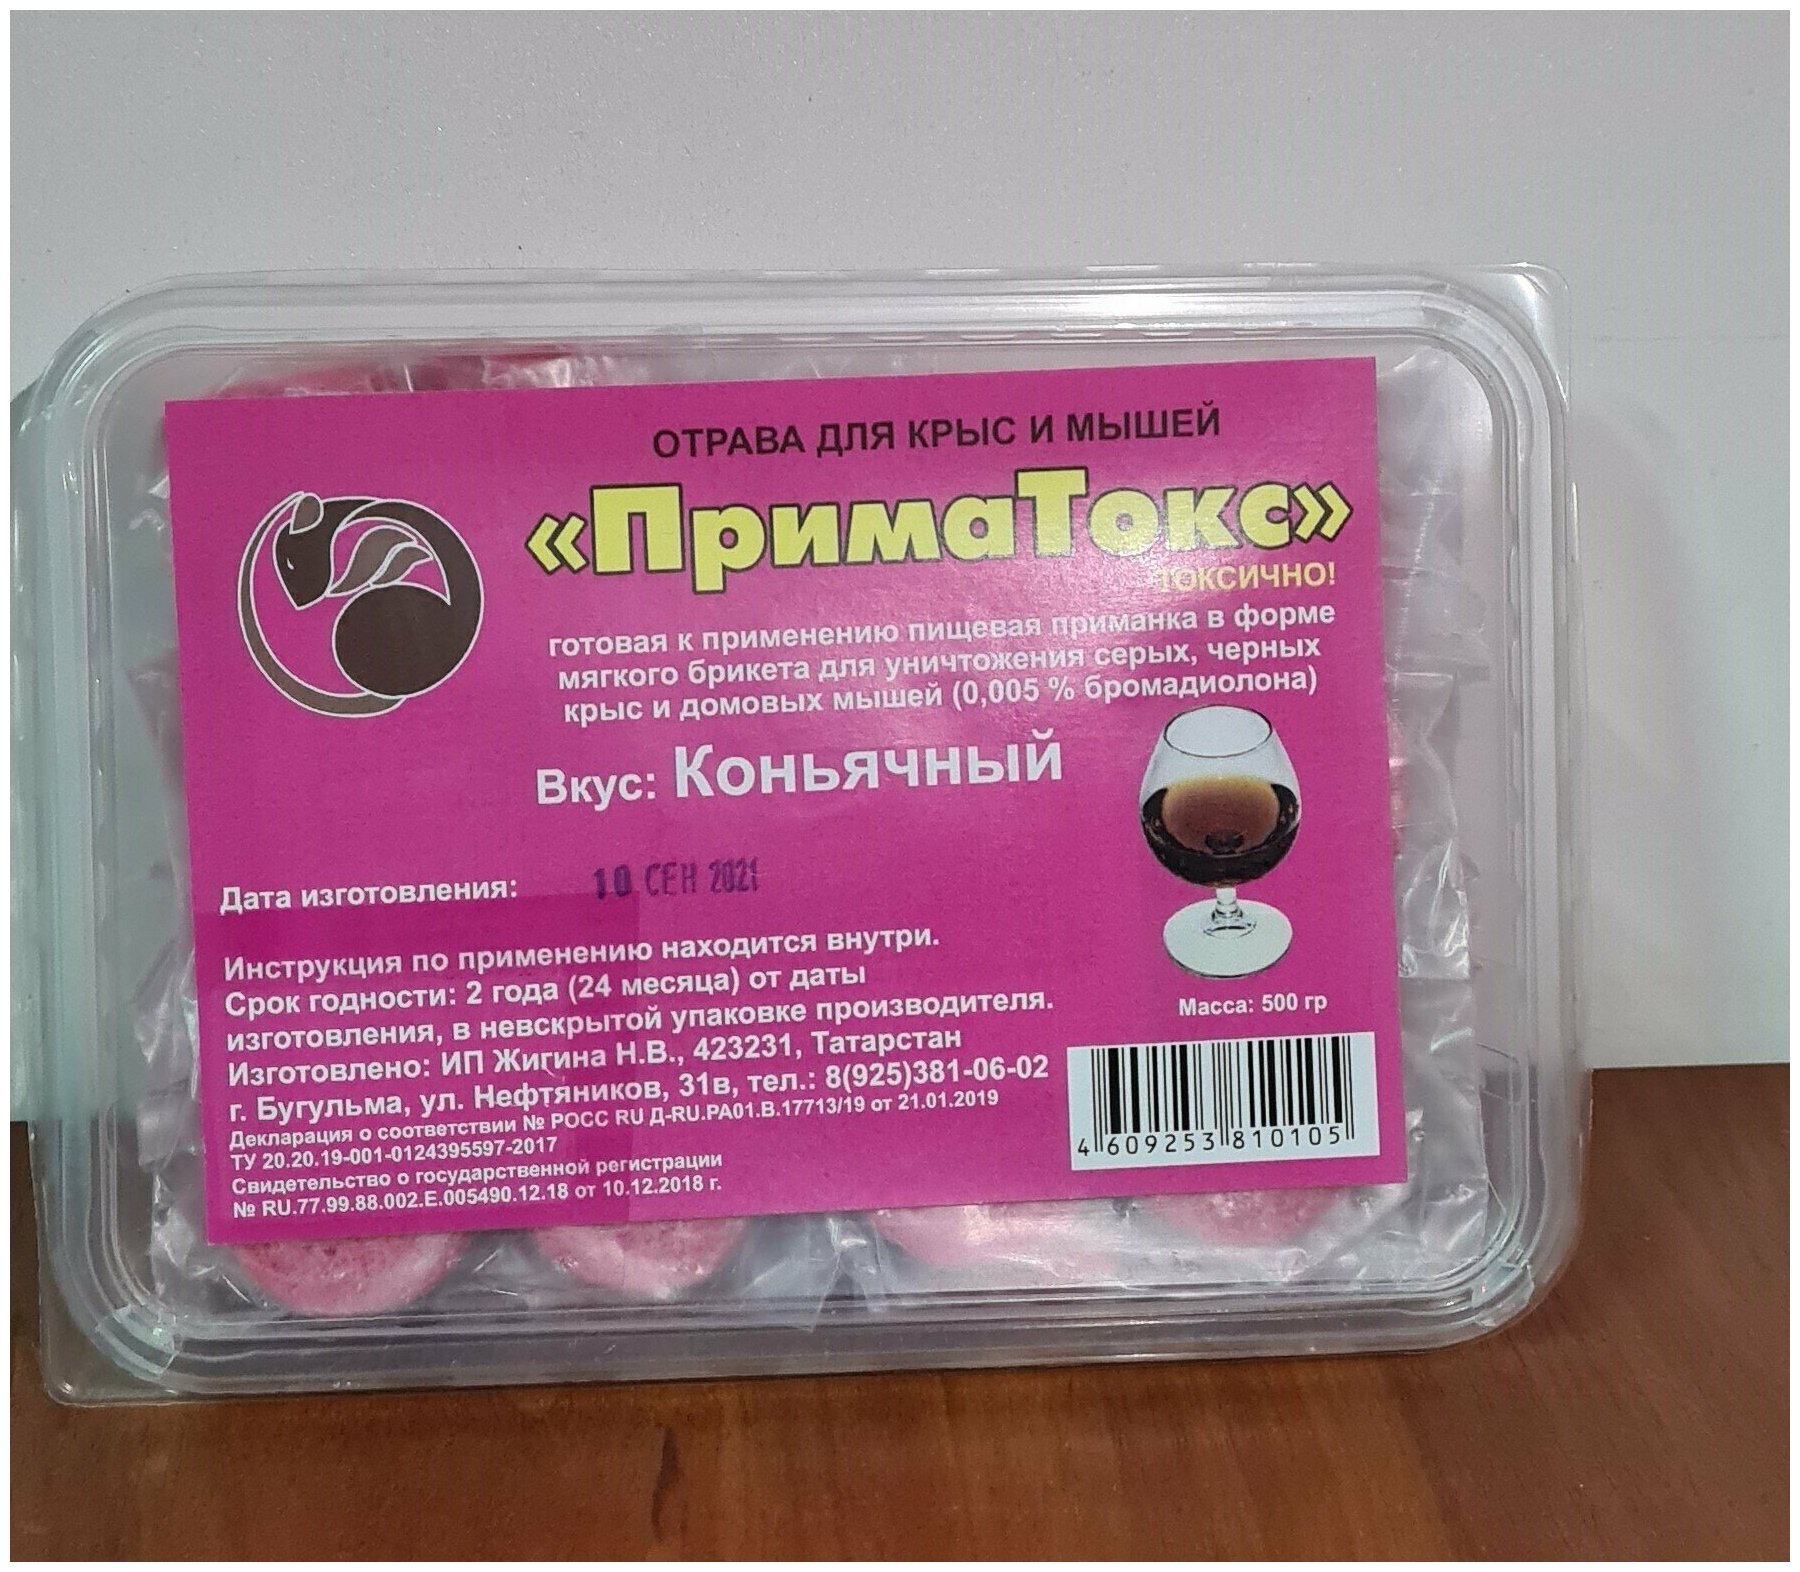 ПримаТокс средство от грызунов крыс и мышей (мягкие брикеты) (коньячный) 500 гр